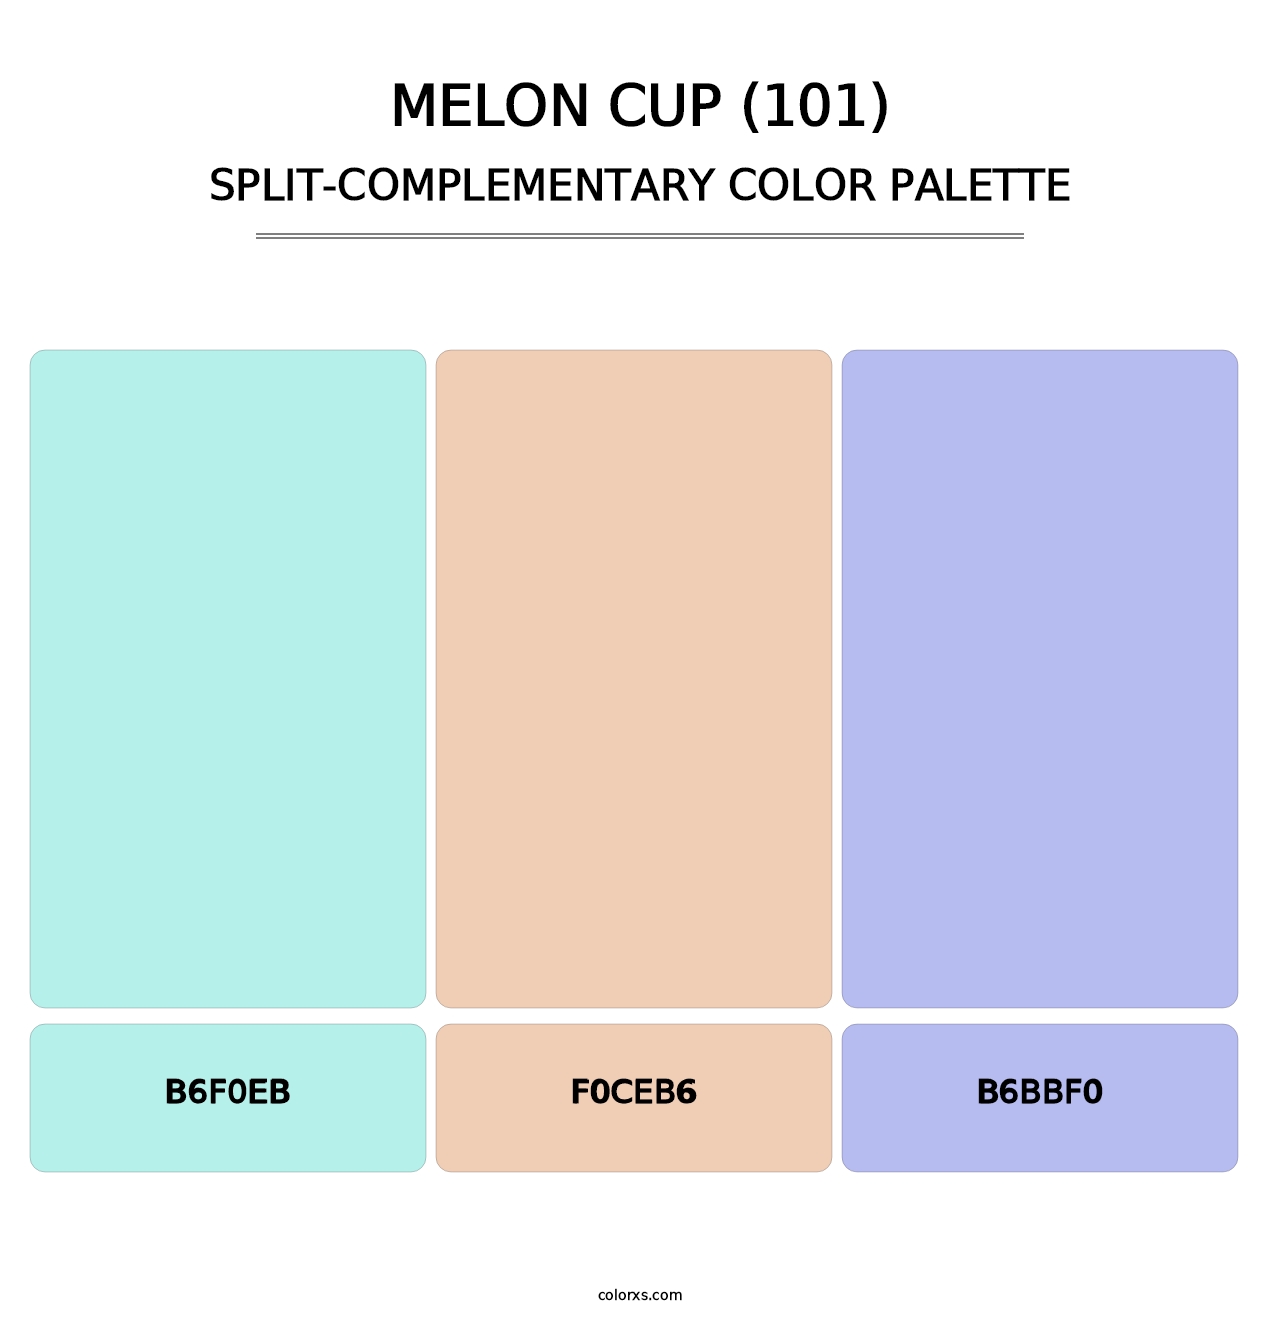 Melon Cup (101) - Split-Complementary Color Palette